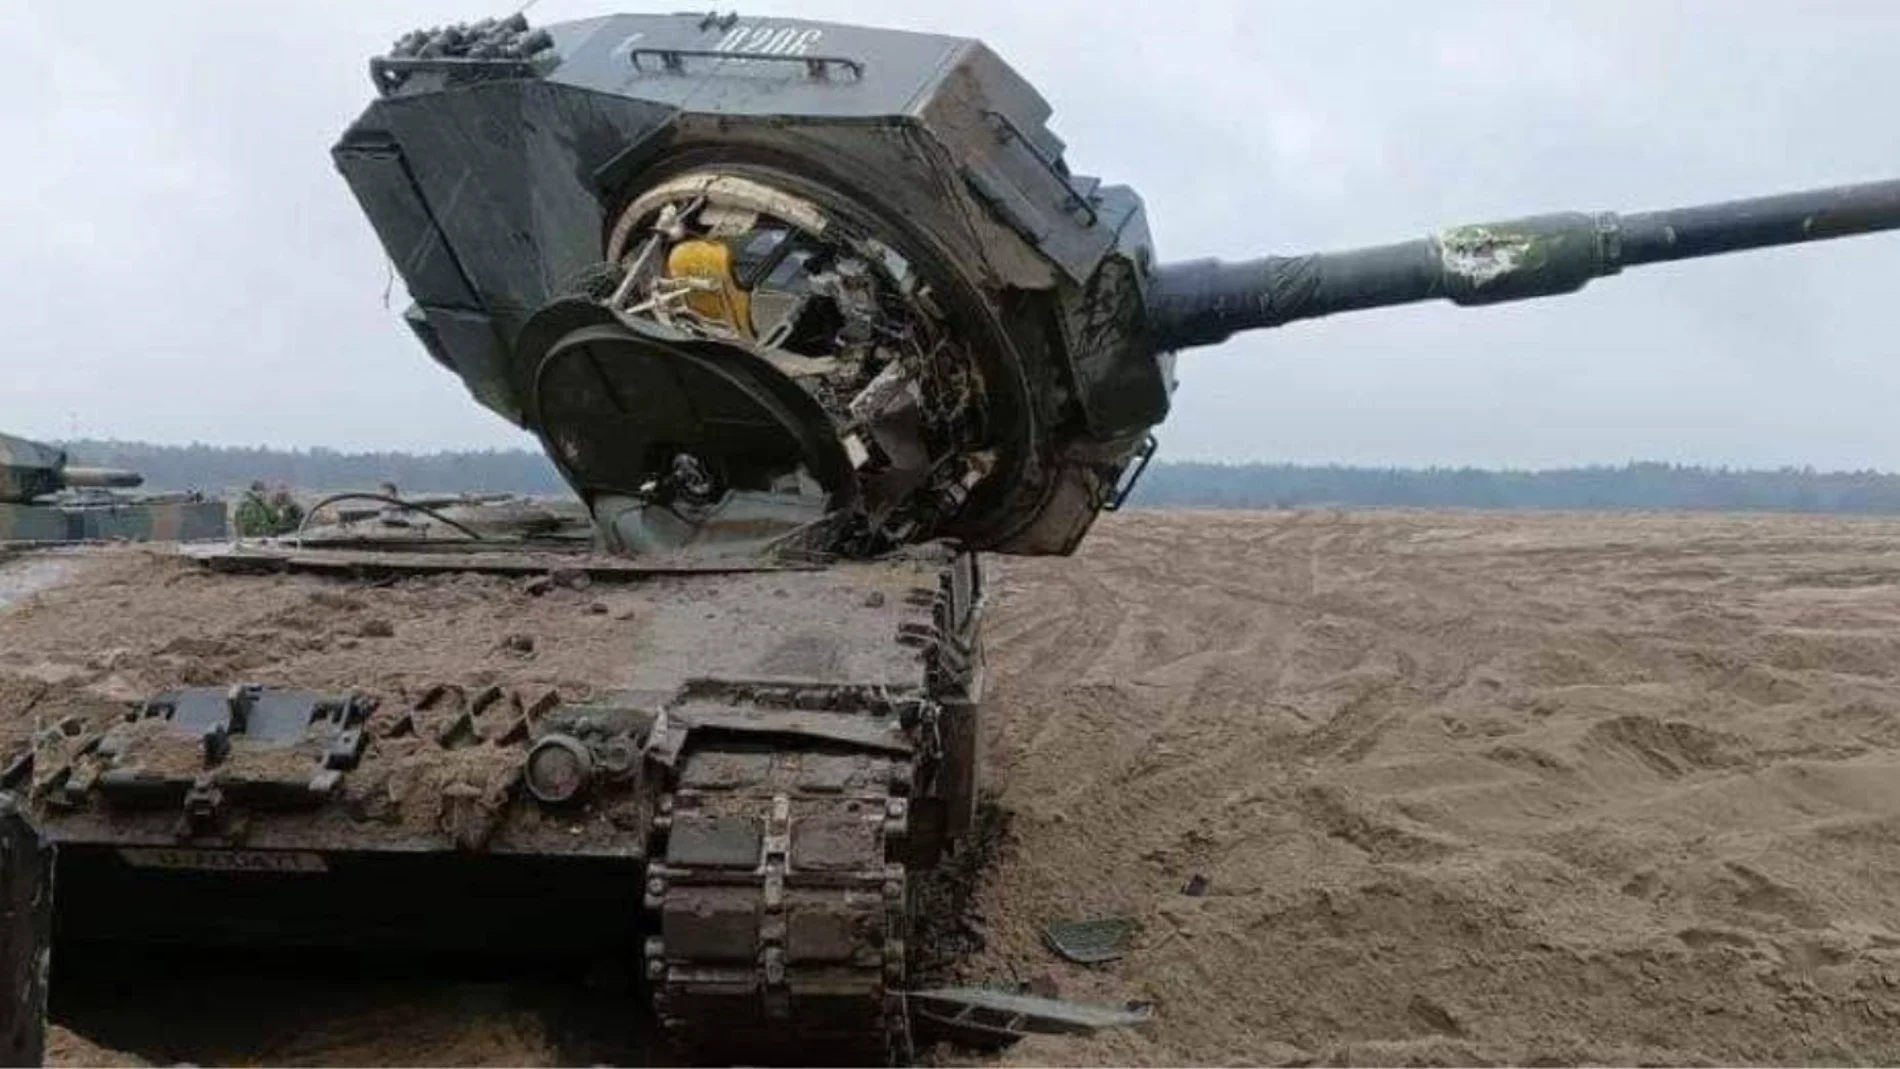 Torreta de un tanque Leopard tras sufrir una colisión en un campo de entrenamiento en Polonia